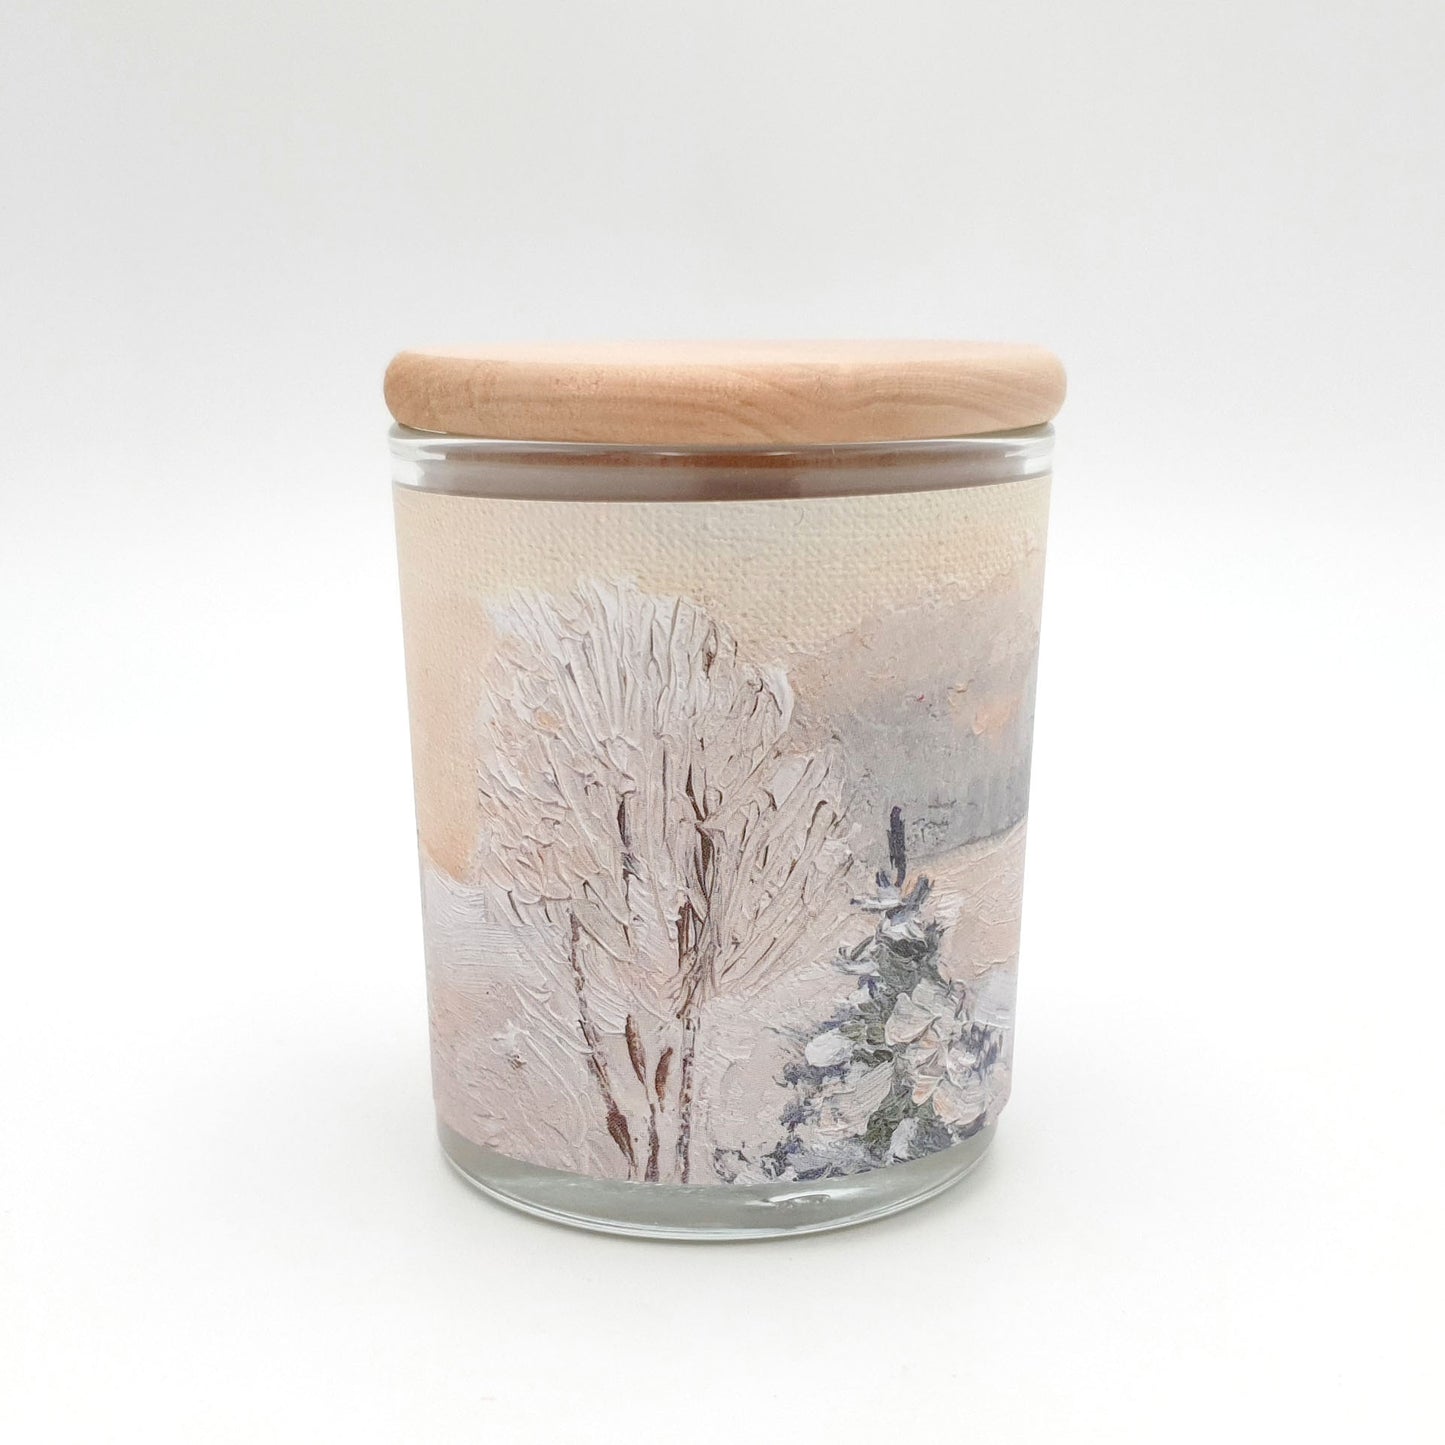 Дизайнерская свеча "Зимнее утро" в стеклянной таре 7,5х8,5 см.